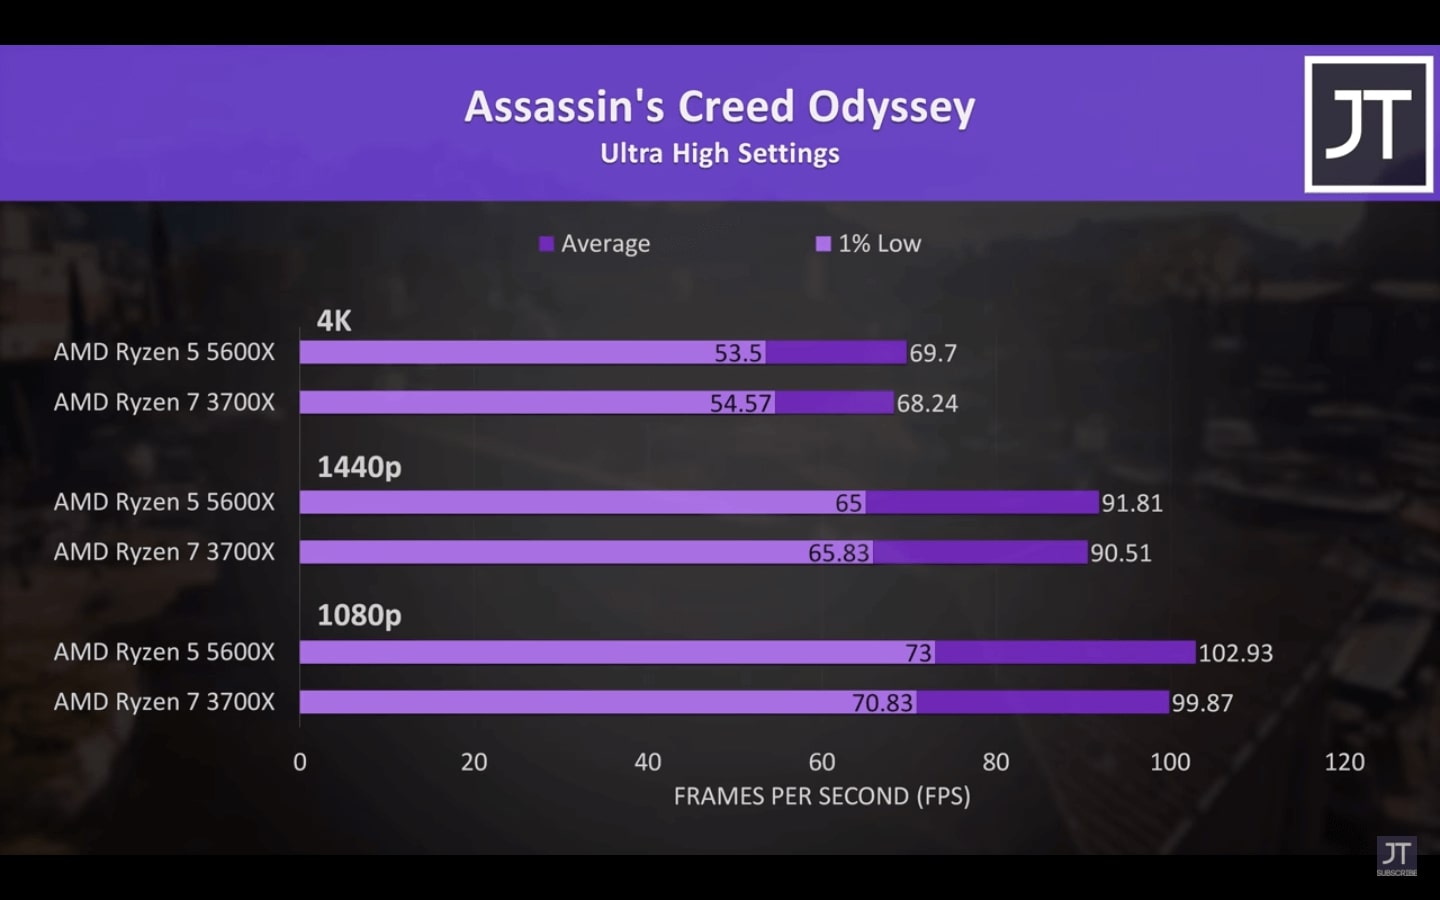 Assassin's Creed Odyssey - Ryzen 5 5600x vs Ryzen 7 3700x